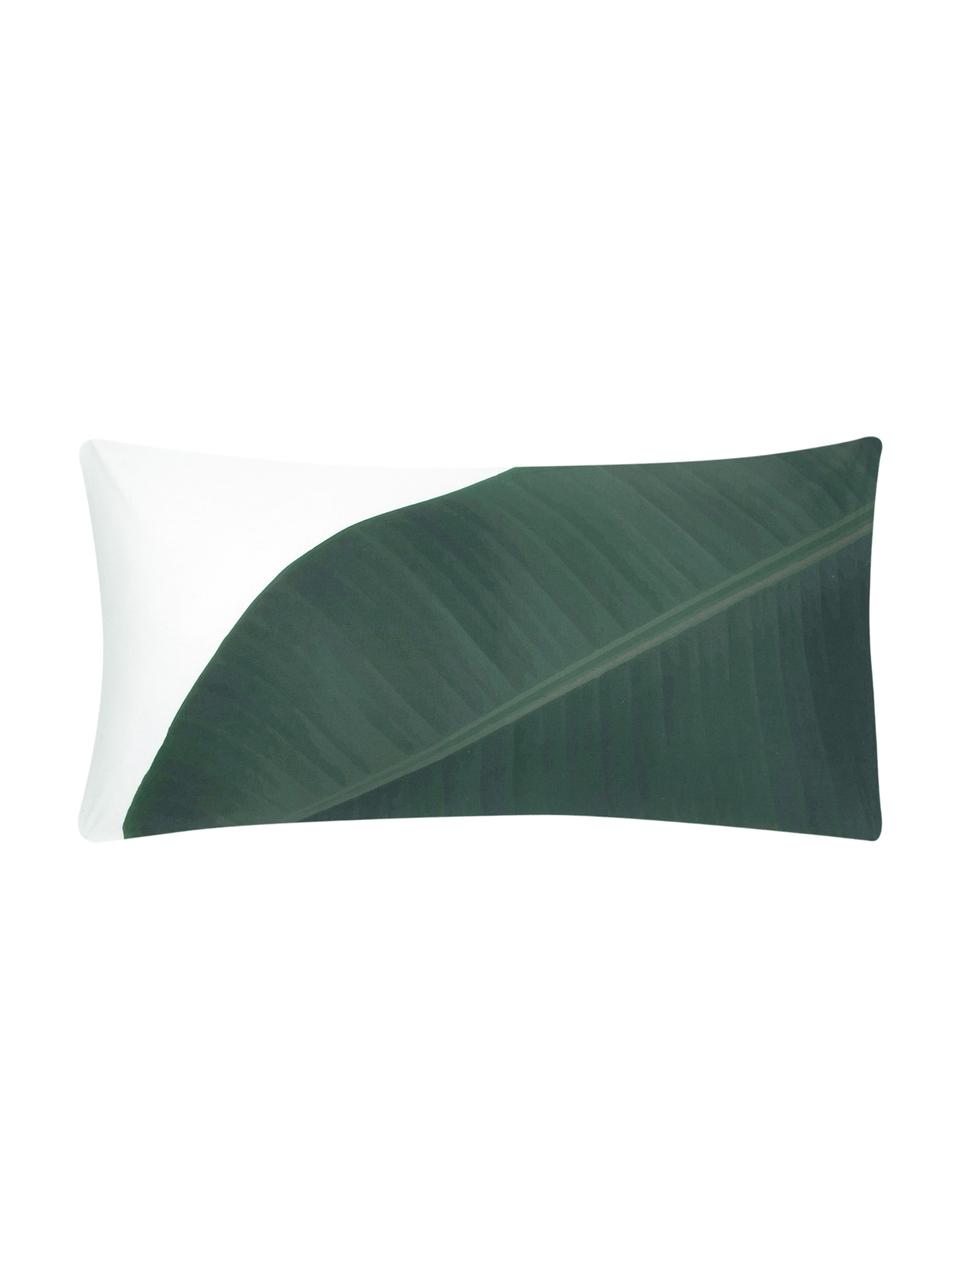 Perkálový povlak na polštář s motivem listů Banana, 2 ks, Přední strana: zelená Zadní strana: bílá, Š 40 cm, D 80 cm